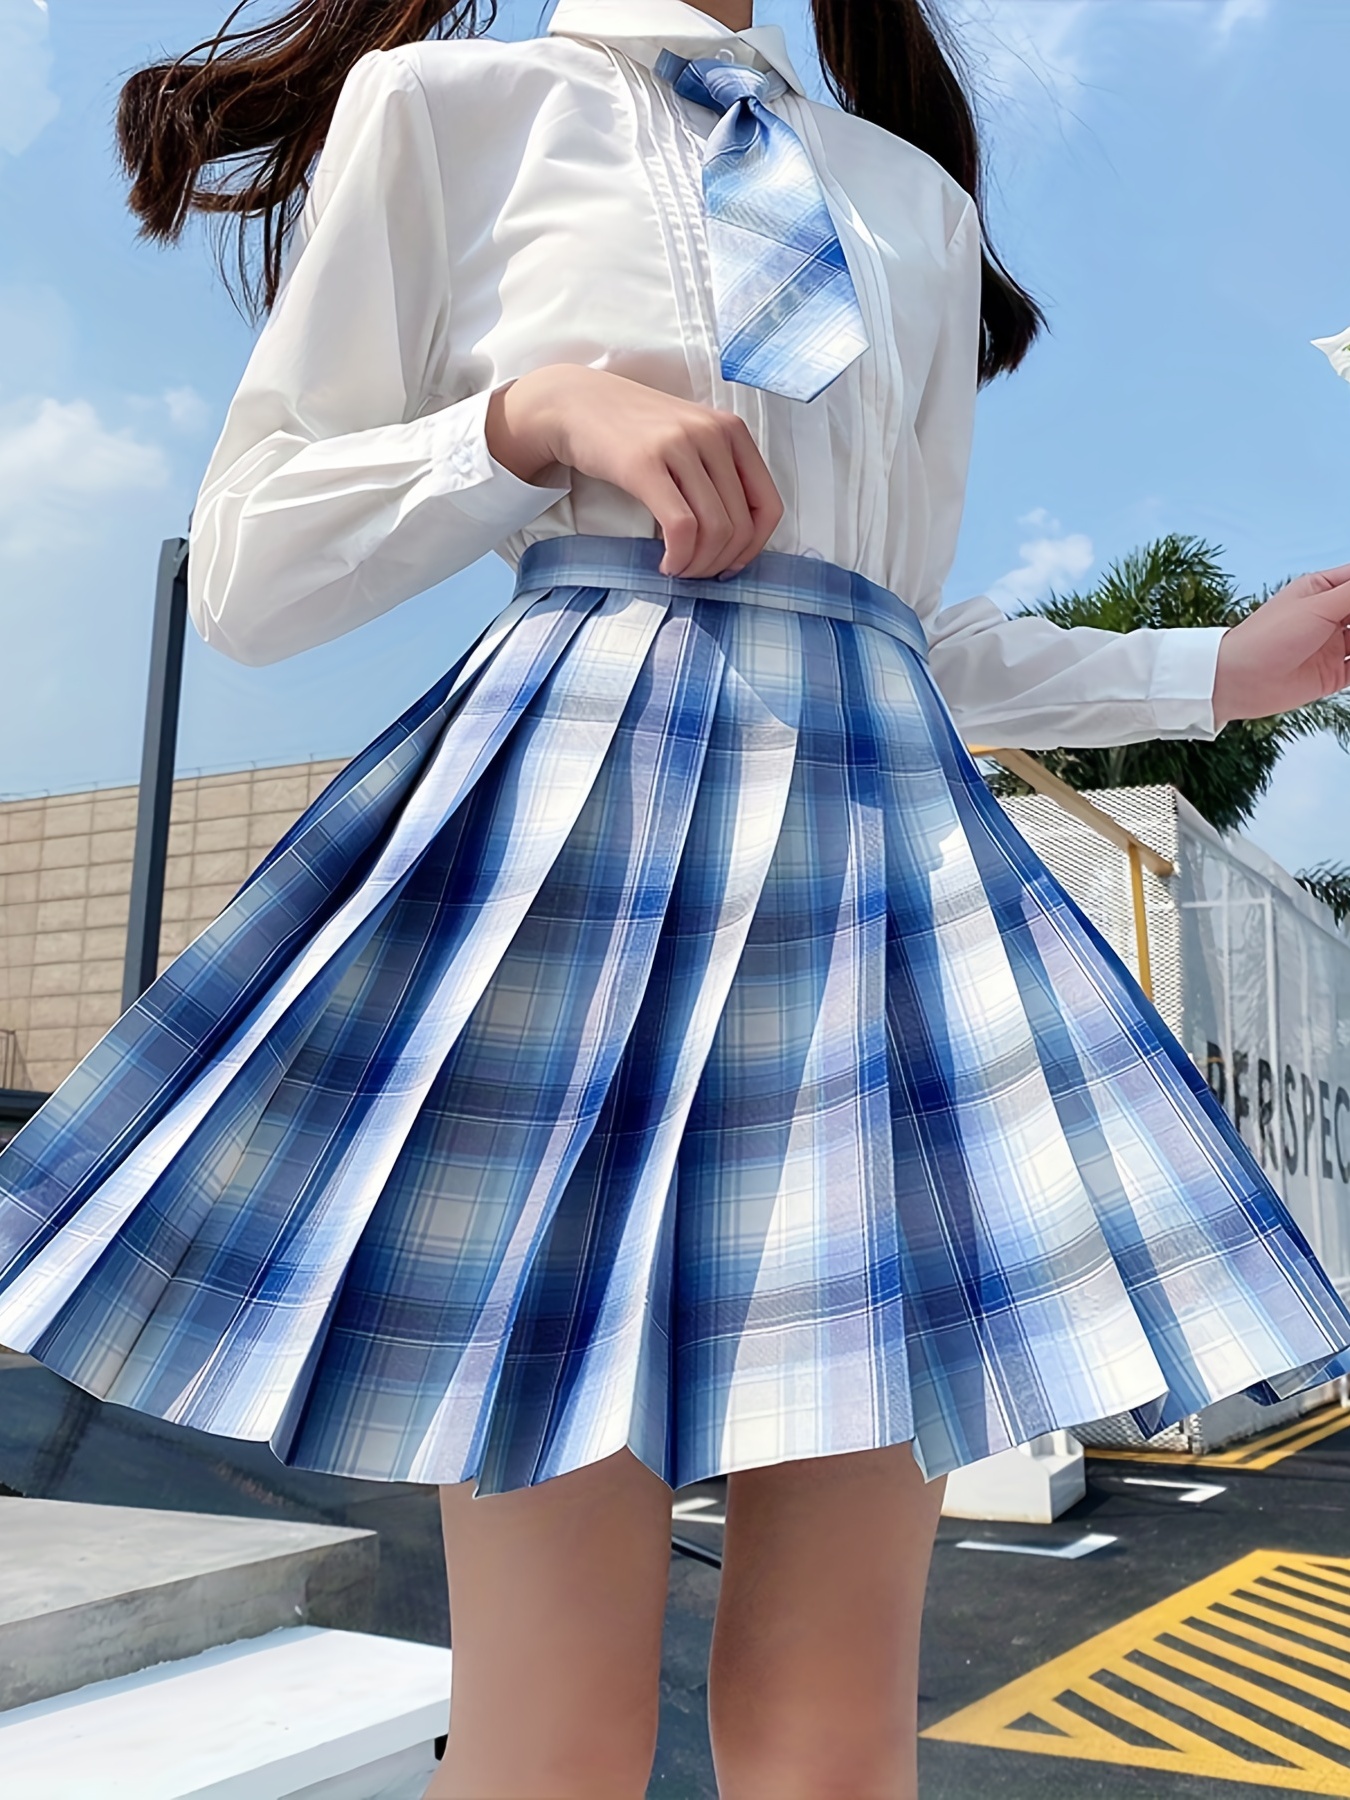 Tennis Skirt With Leggings - Temu Canada